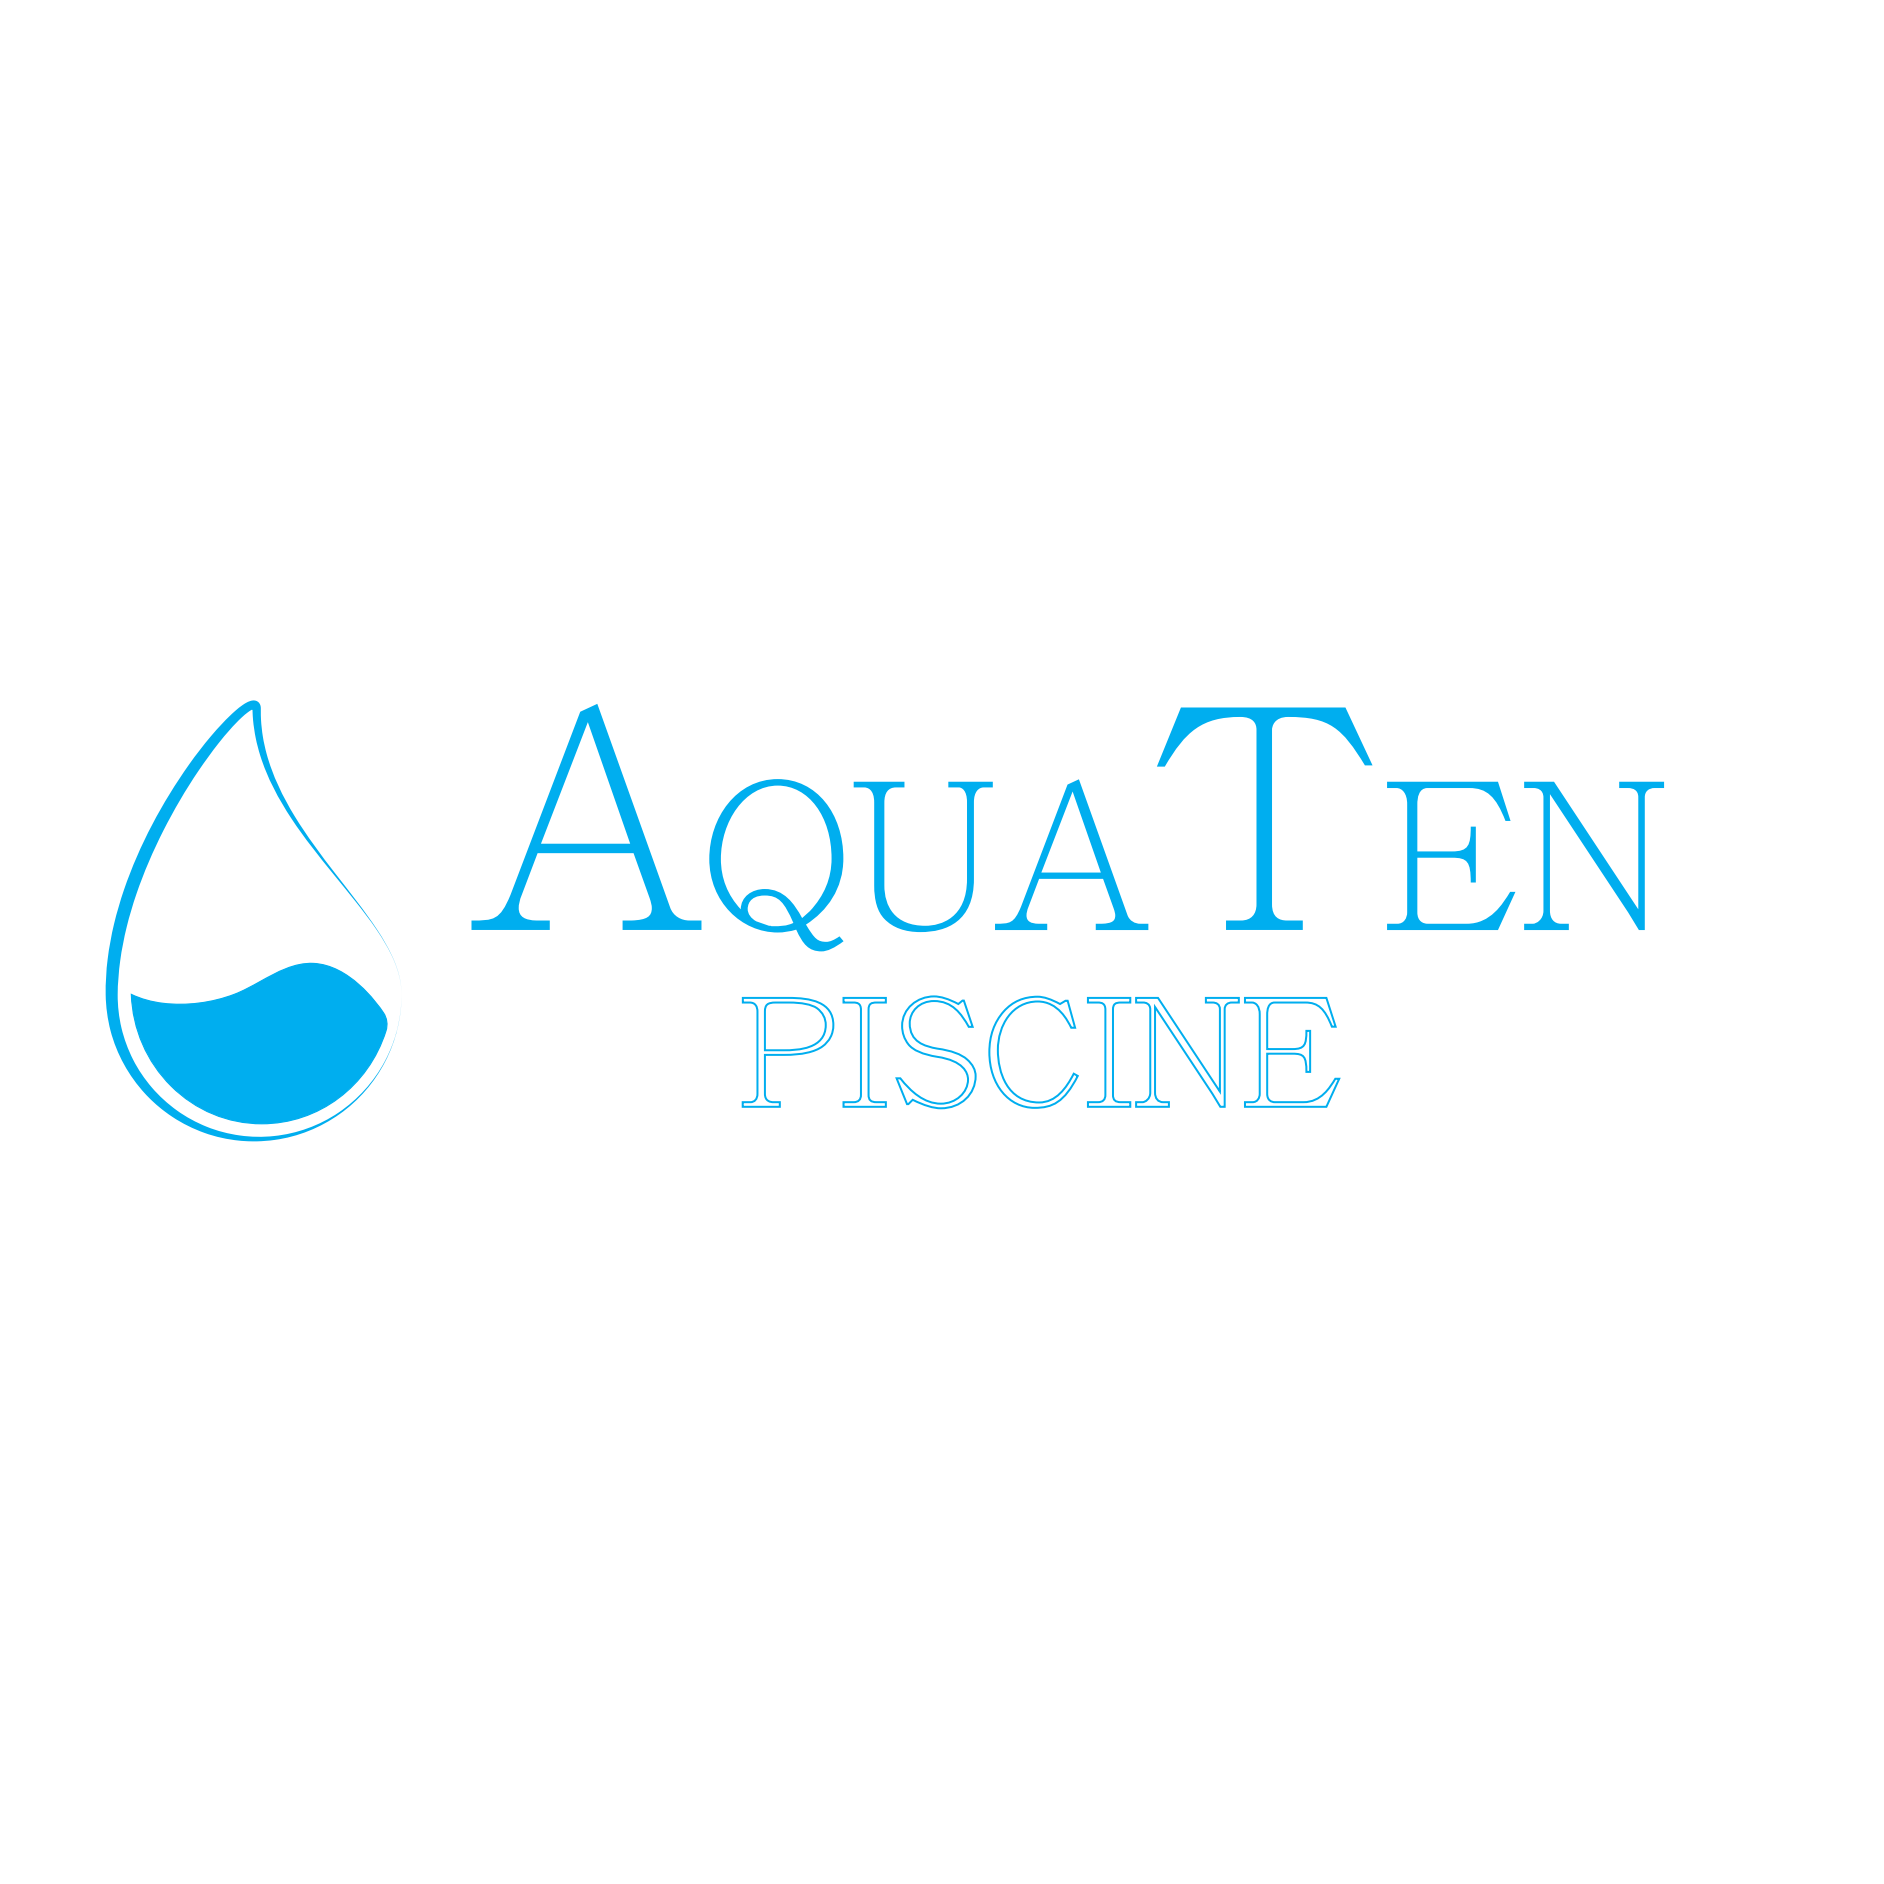 AquaTen - manutenzione piscine e giardini in Ticino Logo